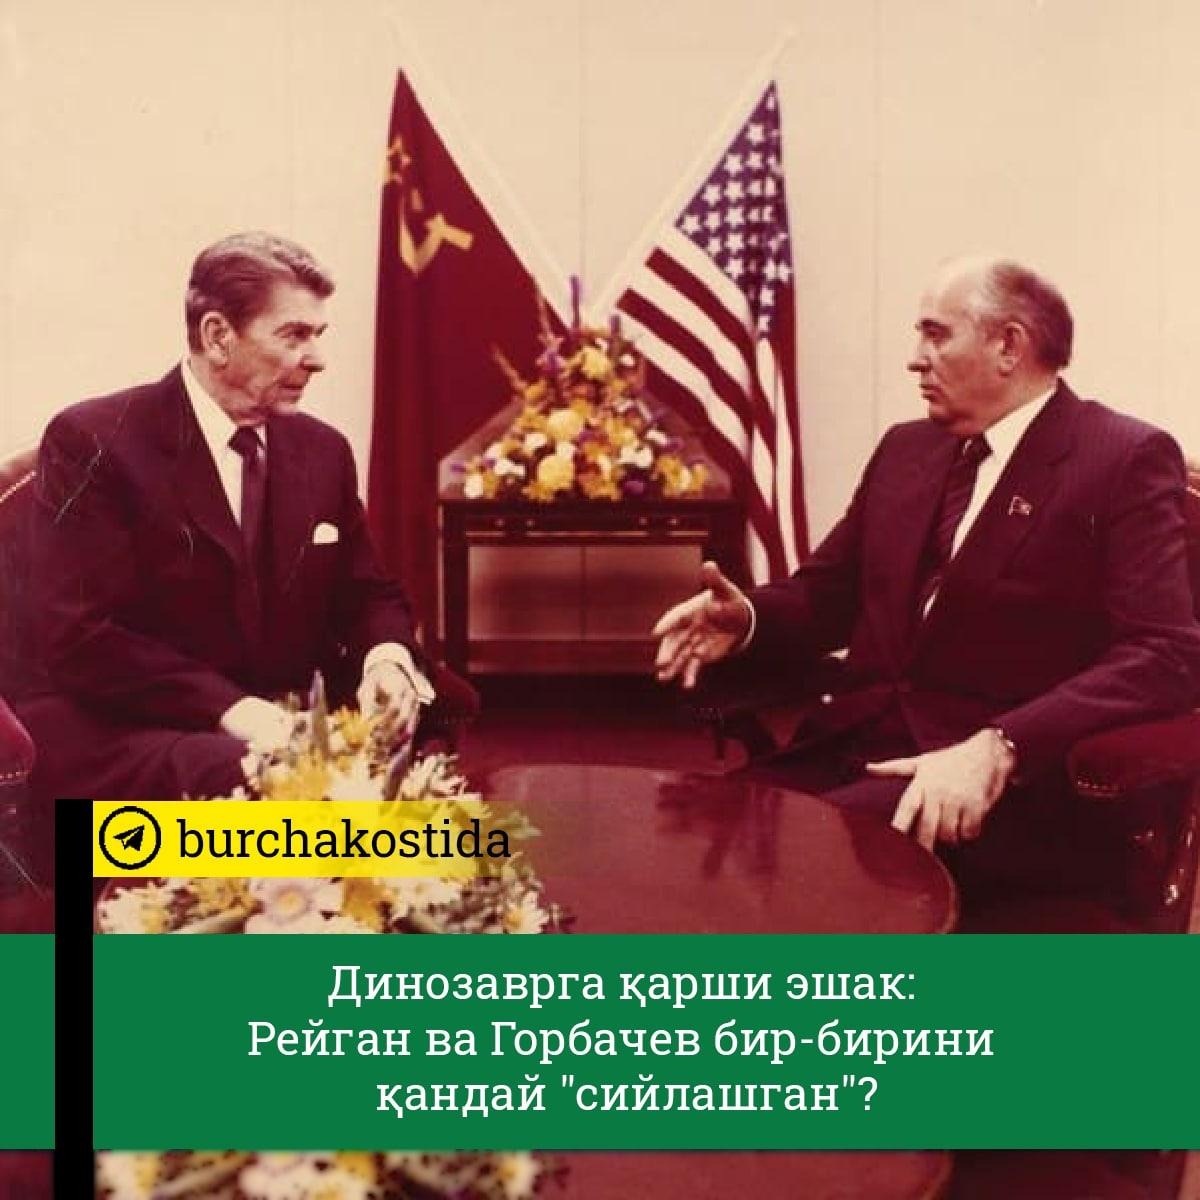 Переговоры с рейганом. Встреча м. Горбачева и р. Рейгана в Женеве. Горбачев Рейган Женева 1985. Рейган и Горбачев 1985. Встреча Горбачева и Рейгана в Женеве 1985.